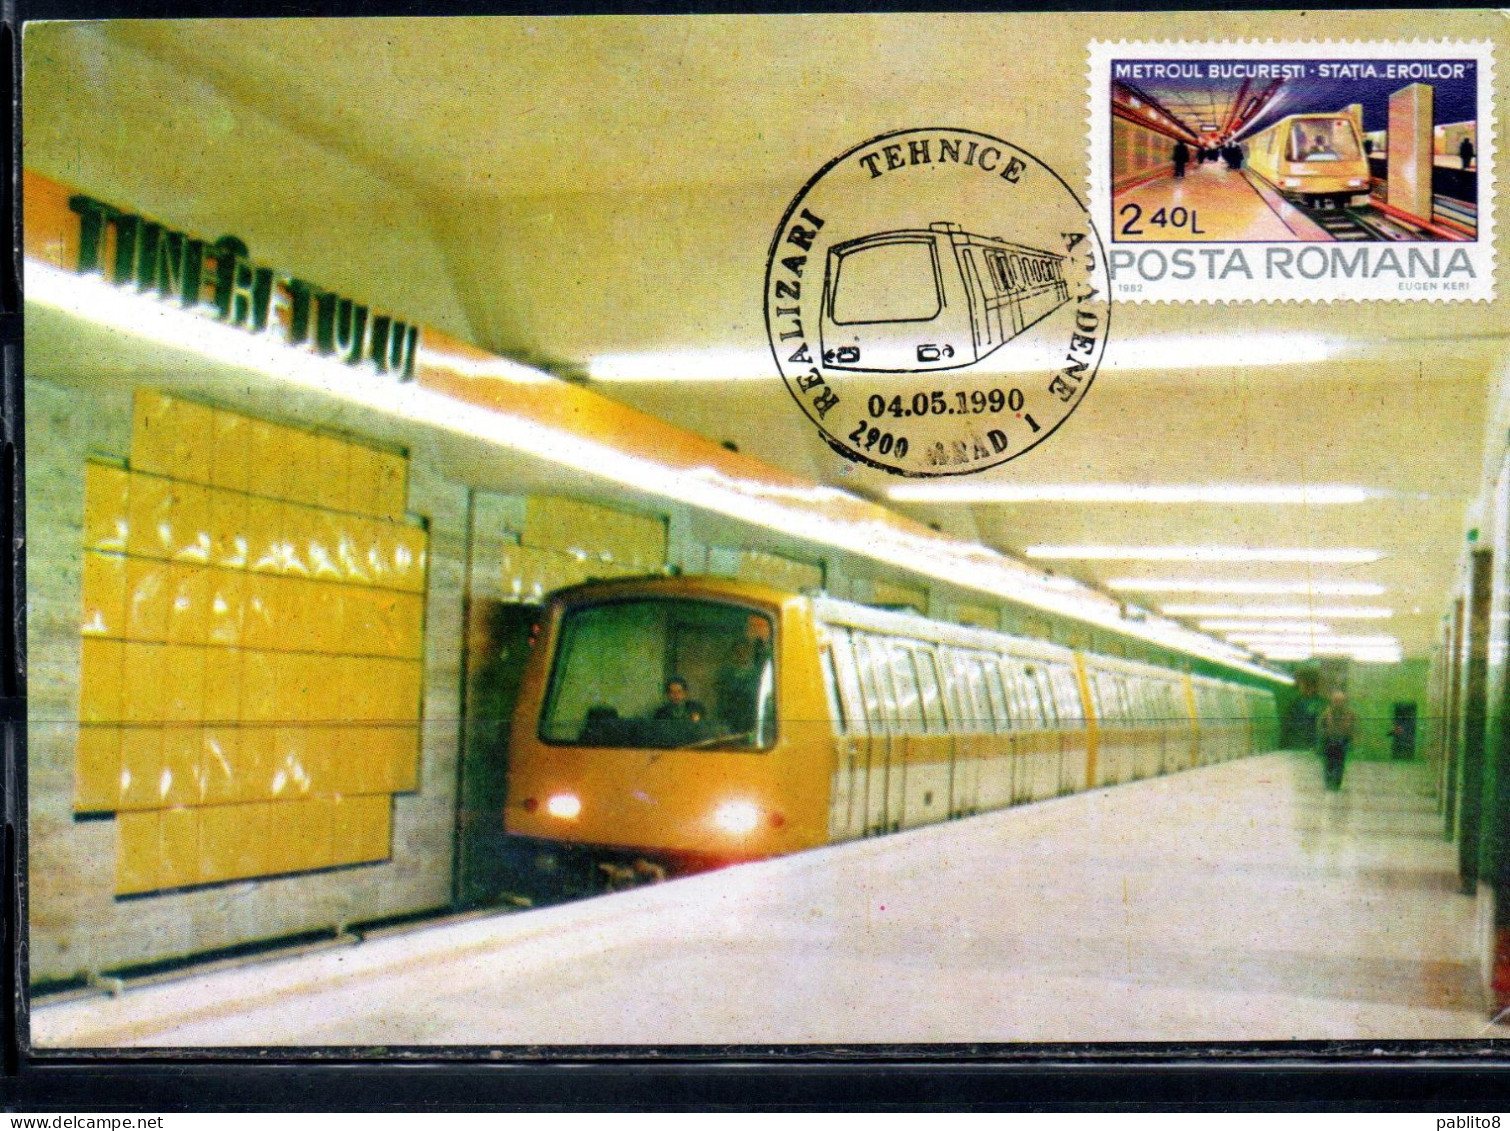 ROMANIA 1982 SUBWAY METROUL BUCARESTI METROPOLITANA 2.40L MAXI MAXIMUM CARD - Cartes-maximum (CM)